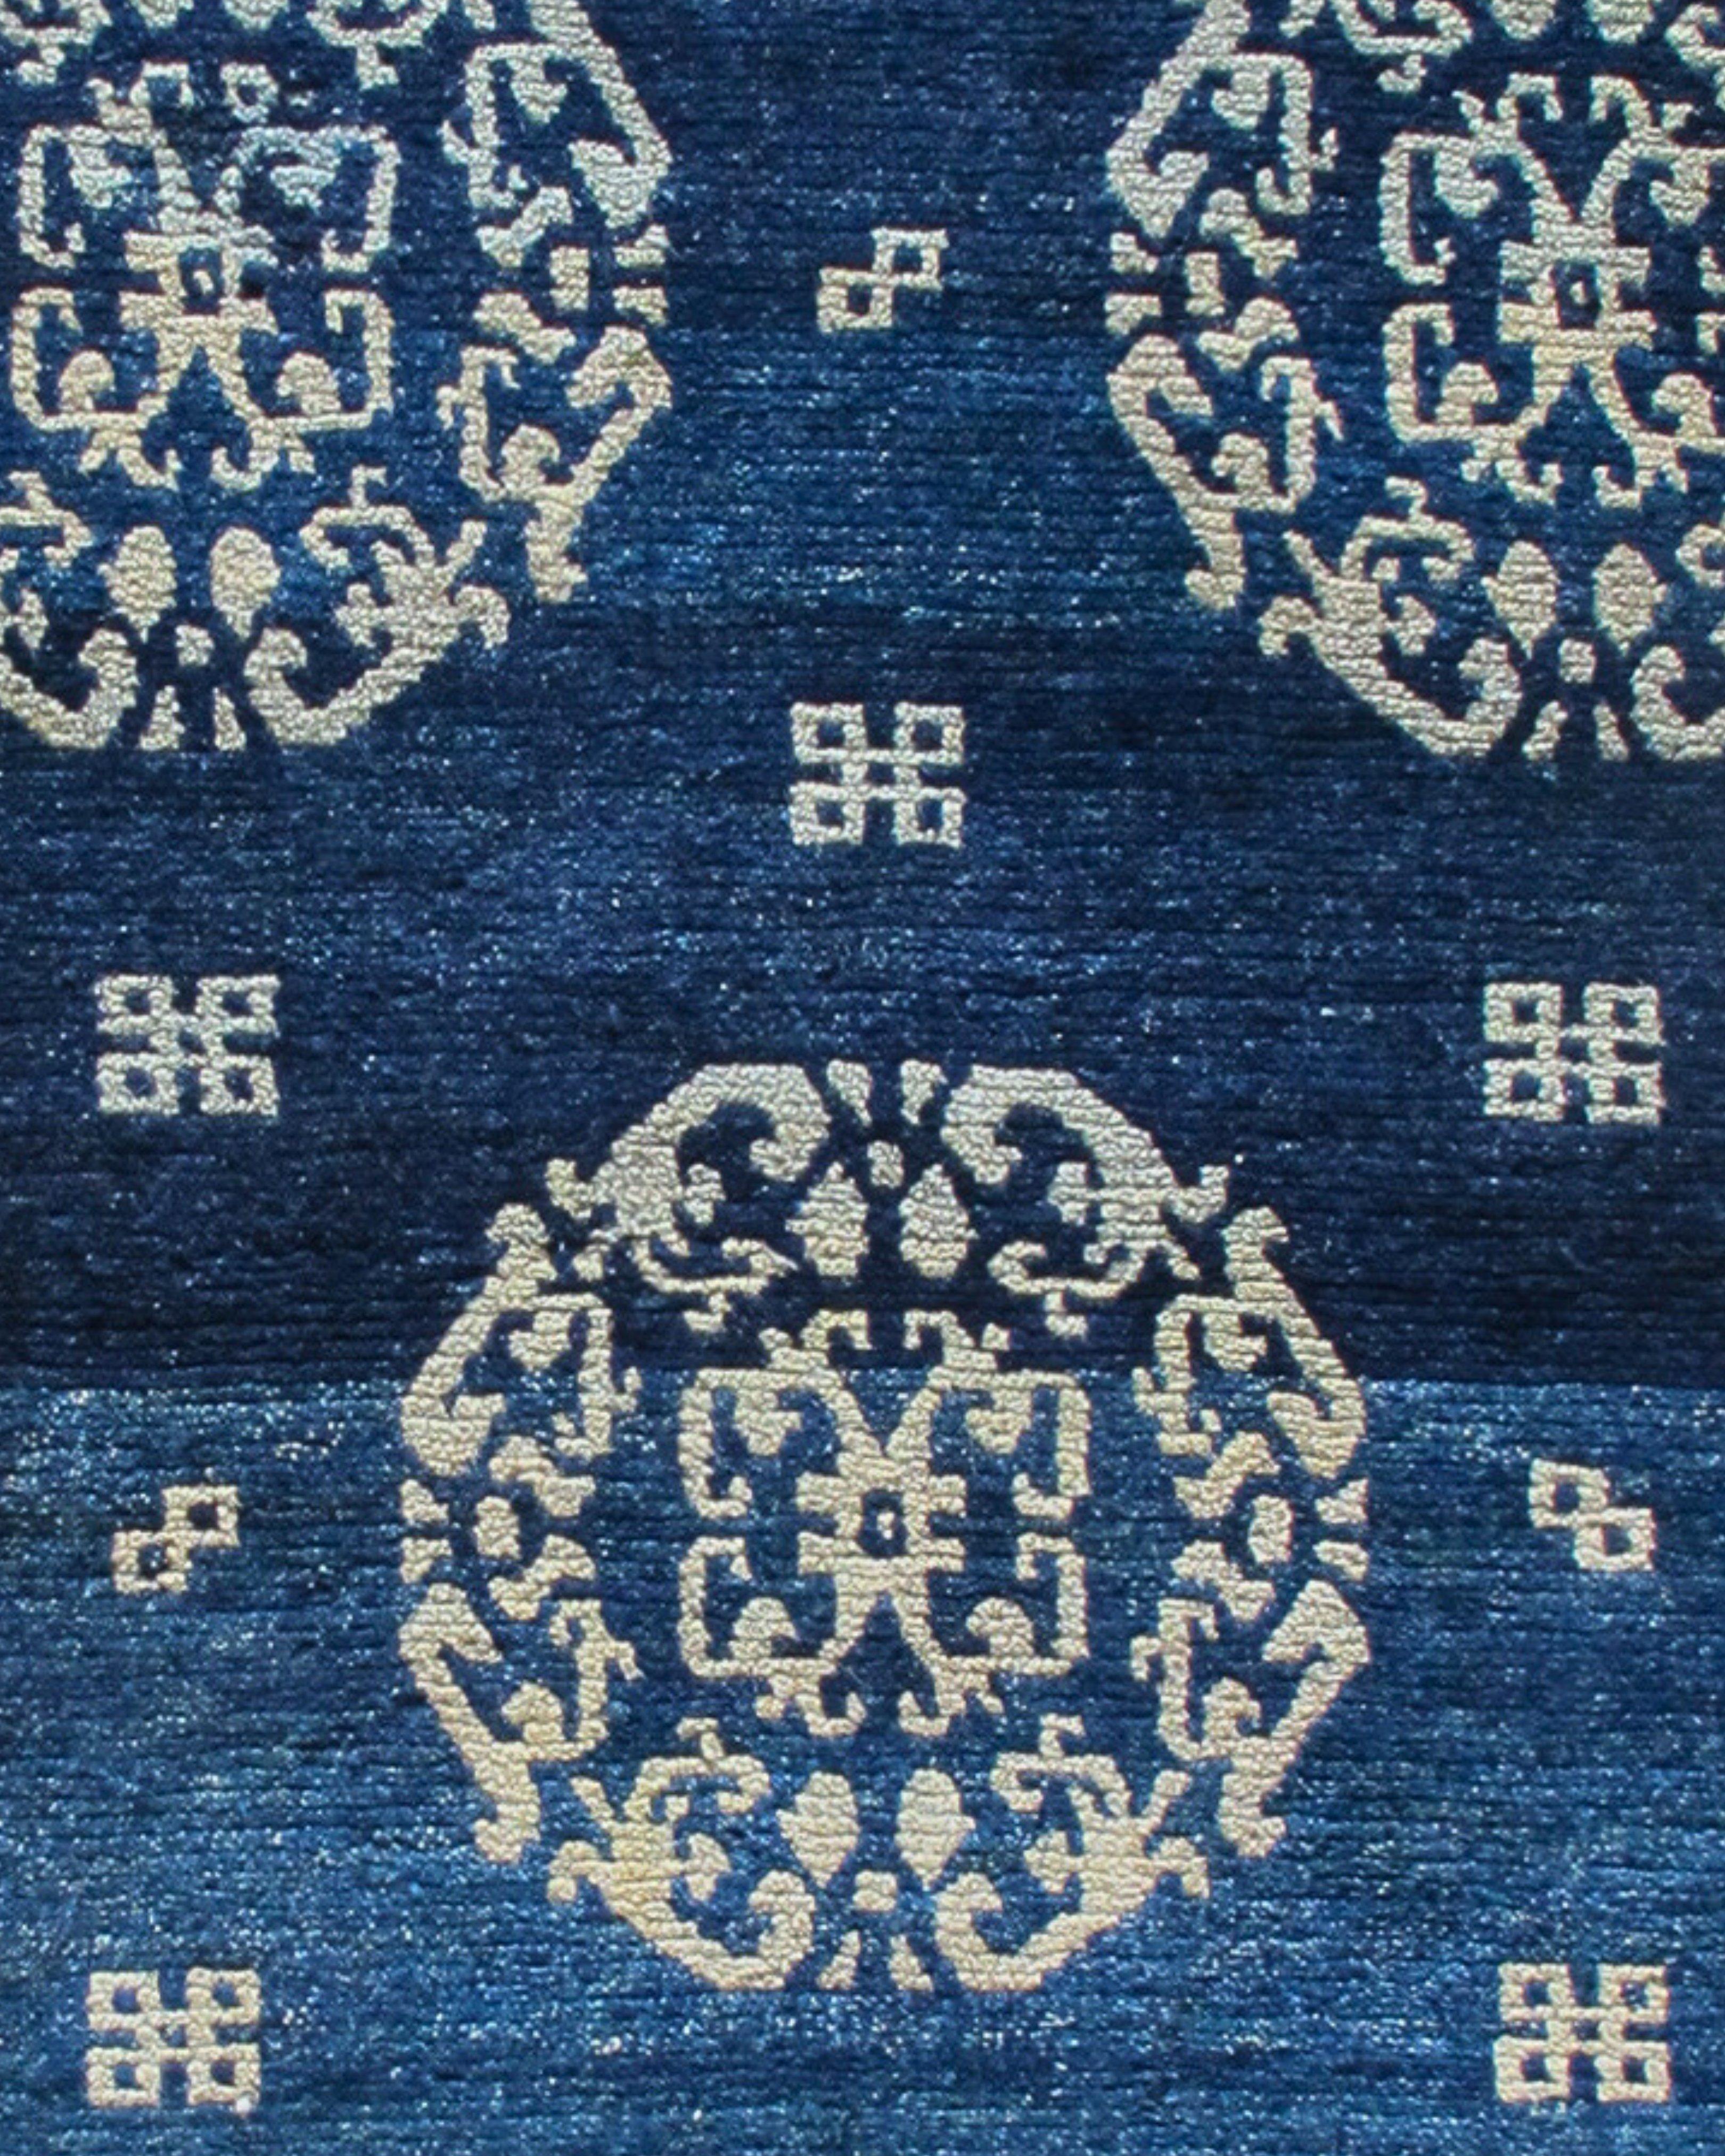 Antiker blau-indigoblauer tibetischer Khadenteppich mit Pfingstrosen, Ende 19.

Dieser stimmungsvolle tibetische Khaden oder Schlafteppich zeichnet große stilisierte Pfingstrosen, die vom chinesischen Textildesign der Ming- und Ching-Dynastien